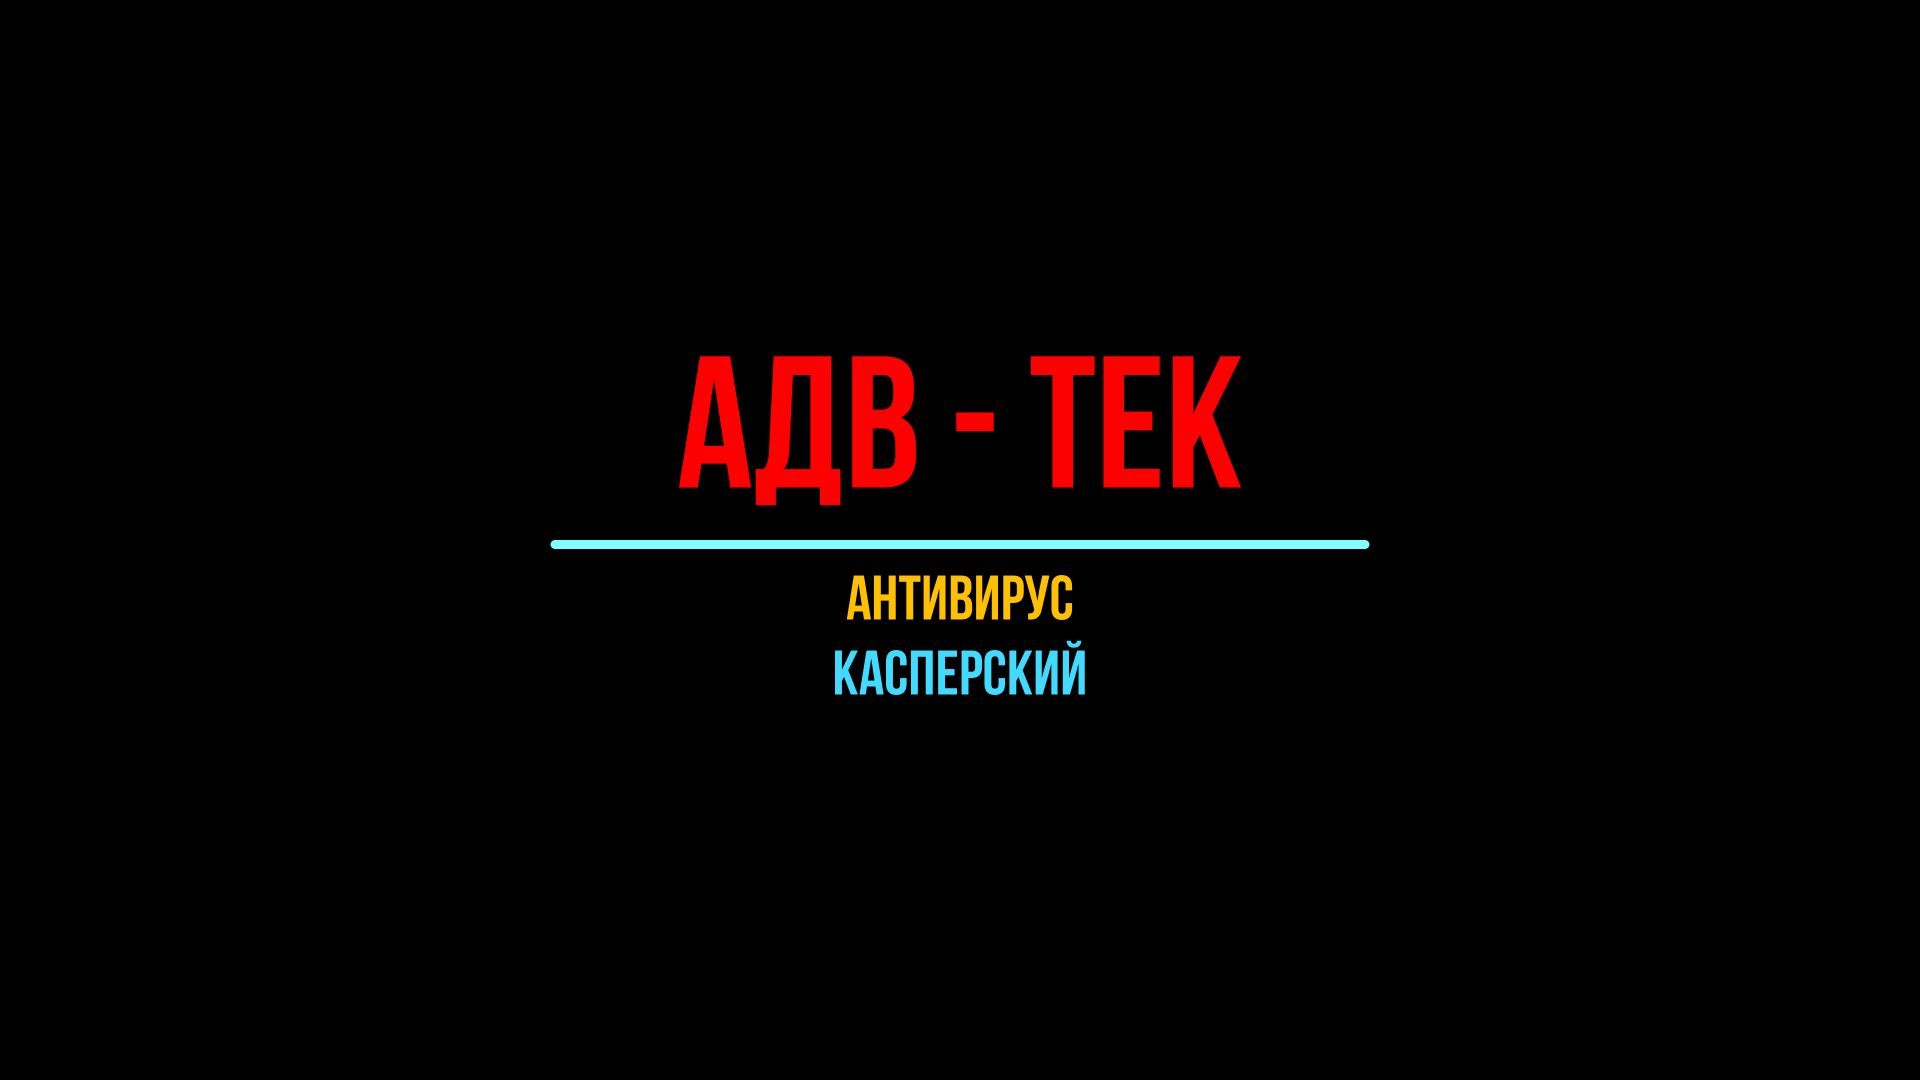 АДВ-Тек, антивирус Касперского, Kaspersky, одна из лучших российских антивирусных программ.